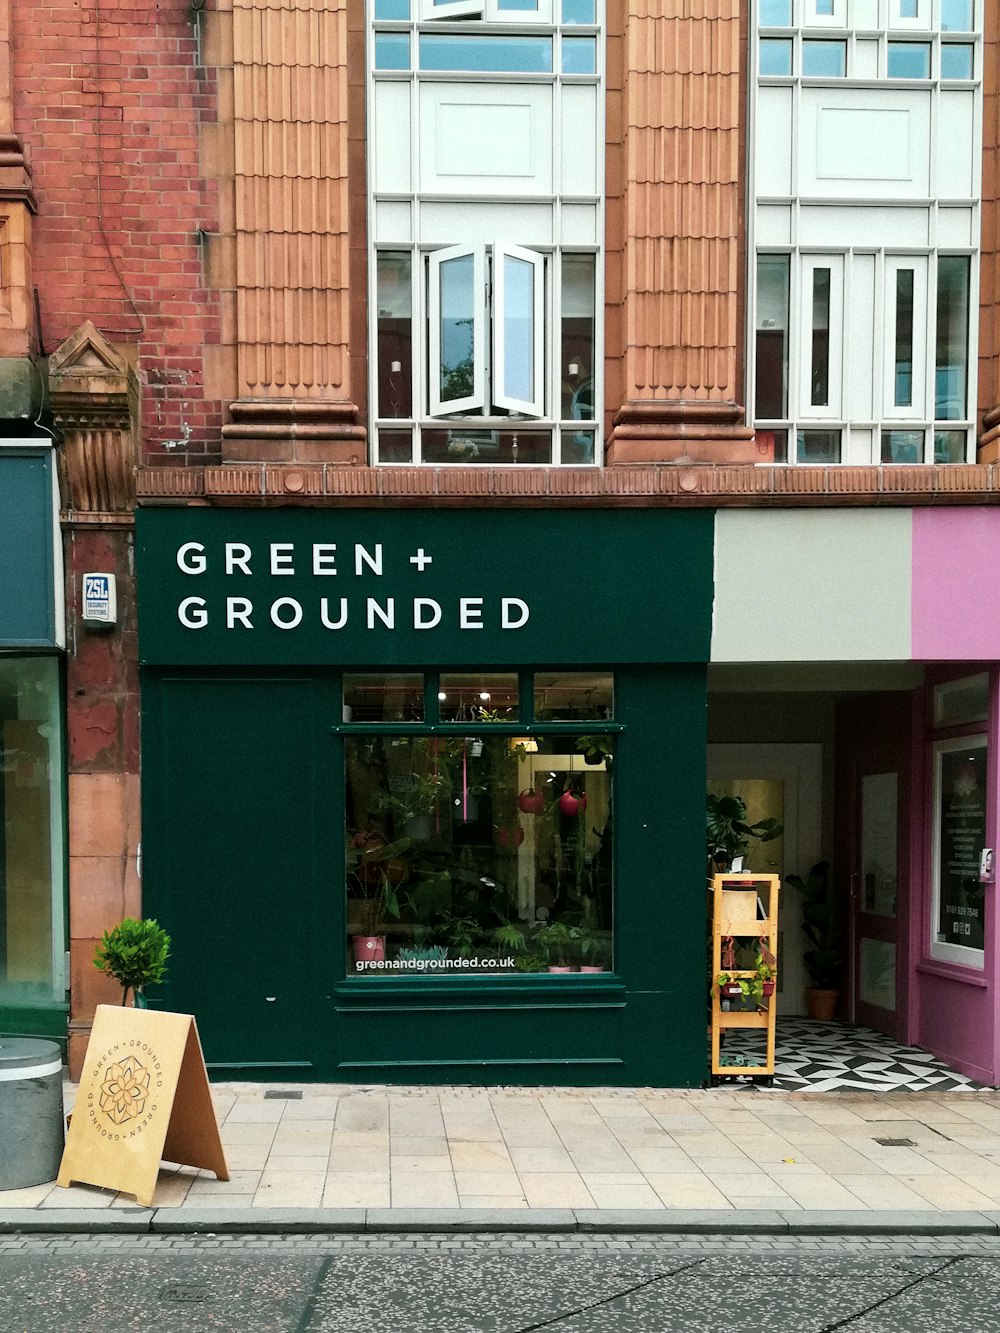 Une devanture de magasin verte et rose dans une rue de la ville